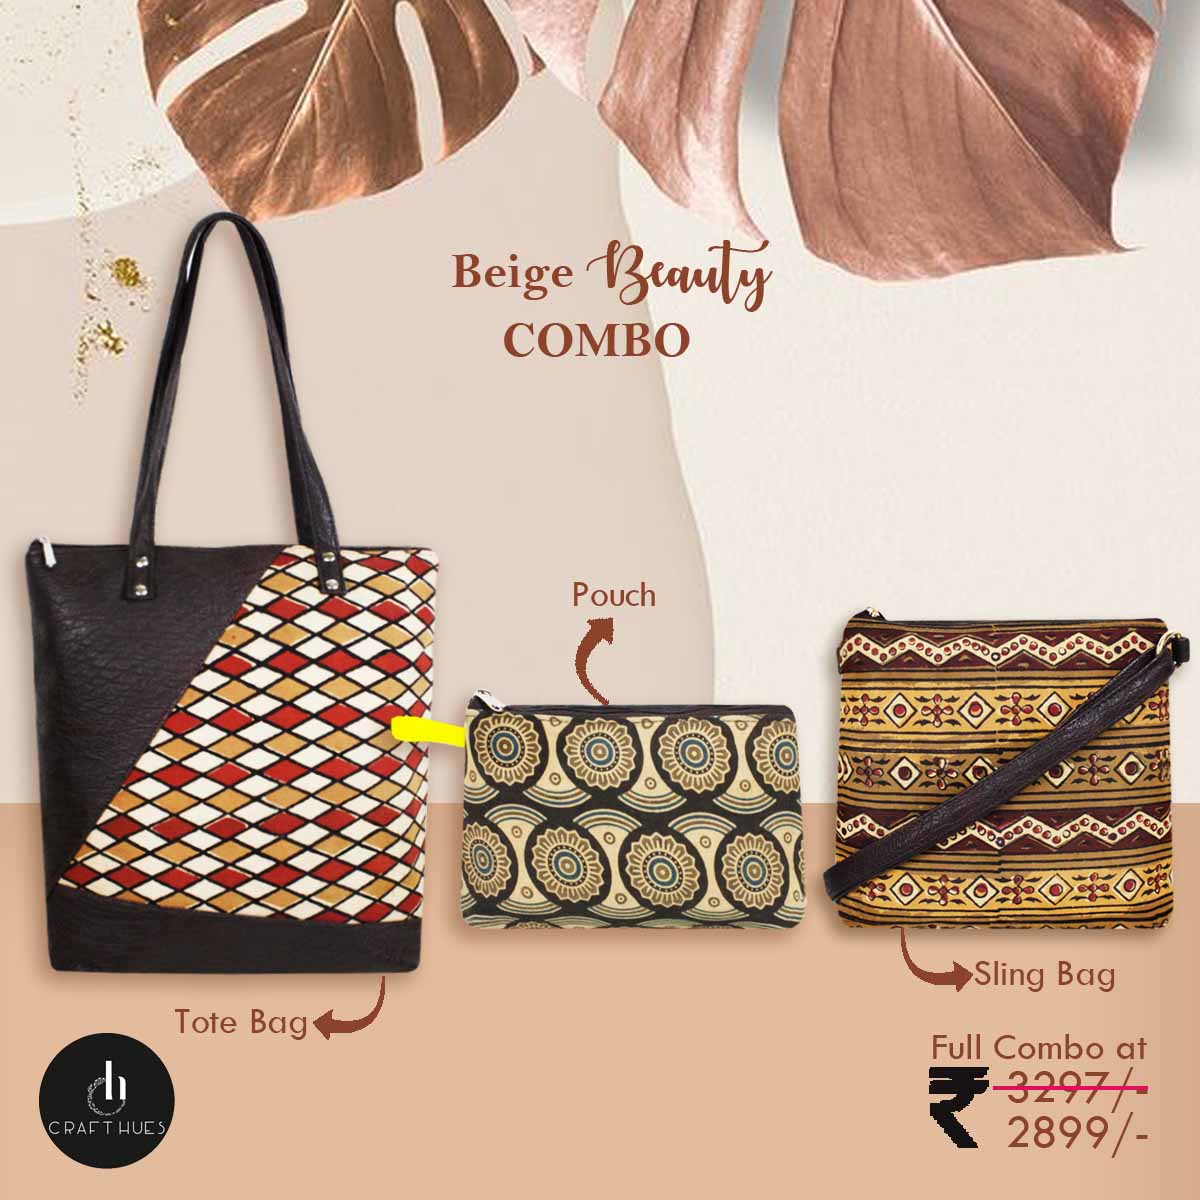 Beige Beauty Bags Combo